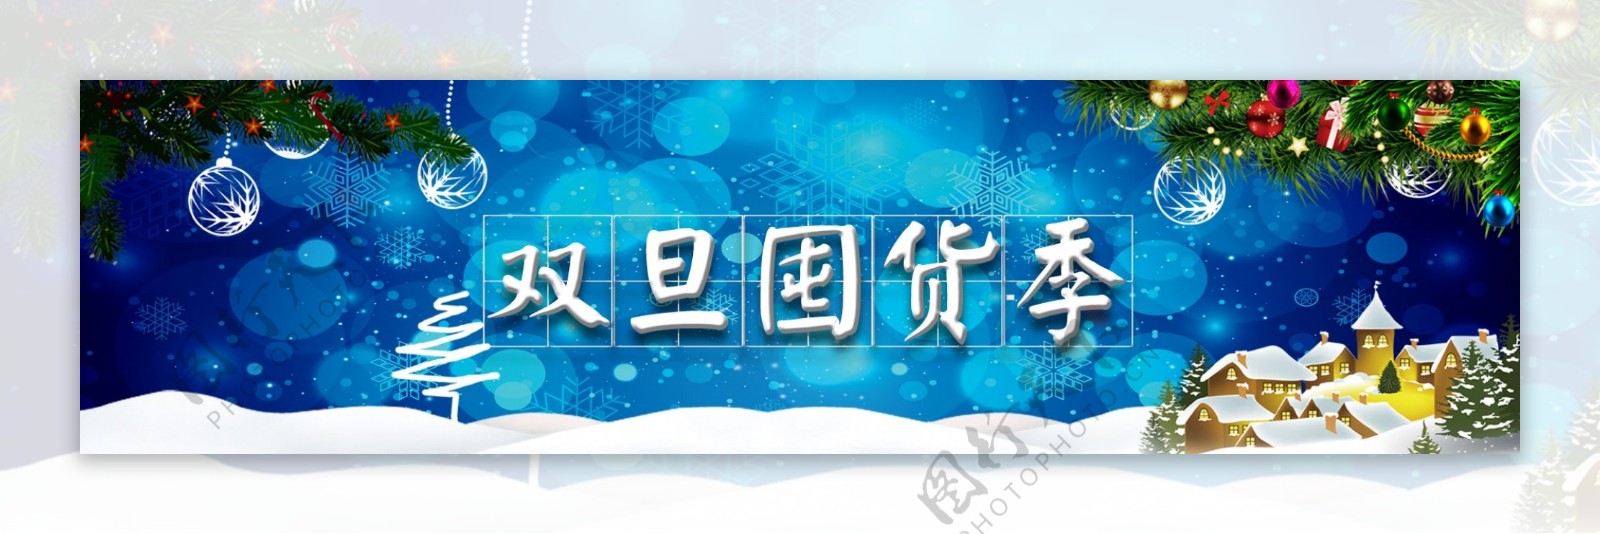 圣诞节简约节日banner背景